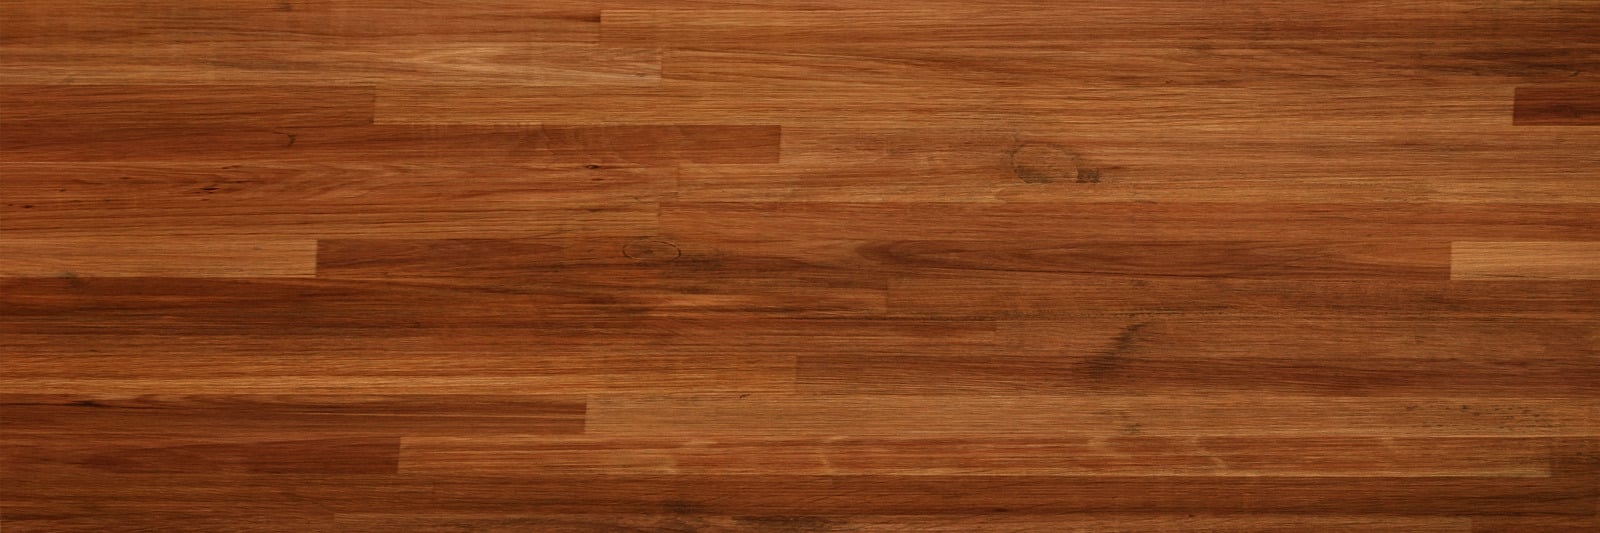 canva-parquet-wood-texture-dark-wooden-floor-background